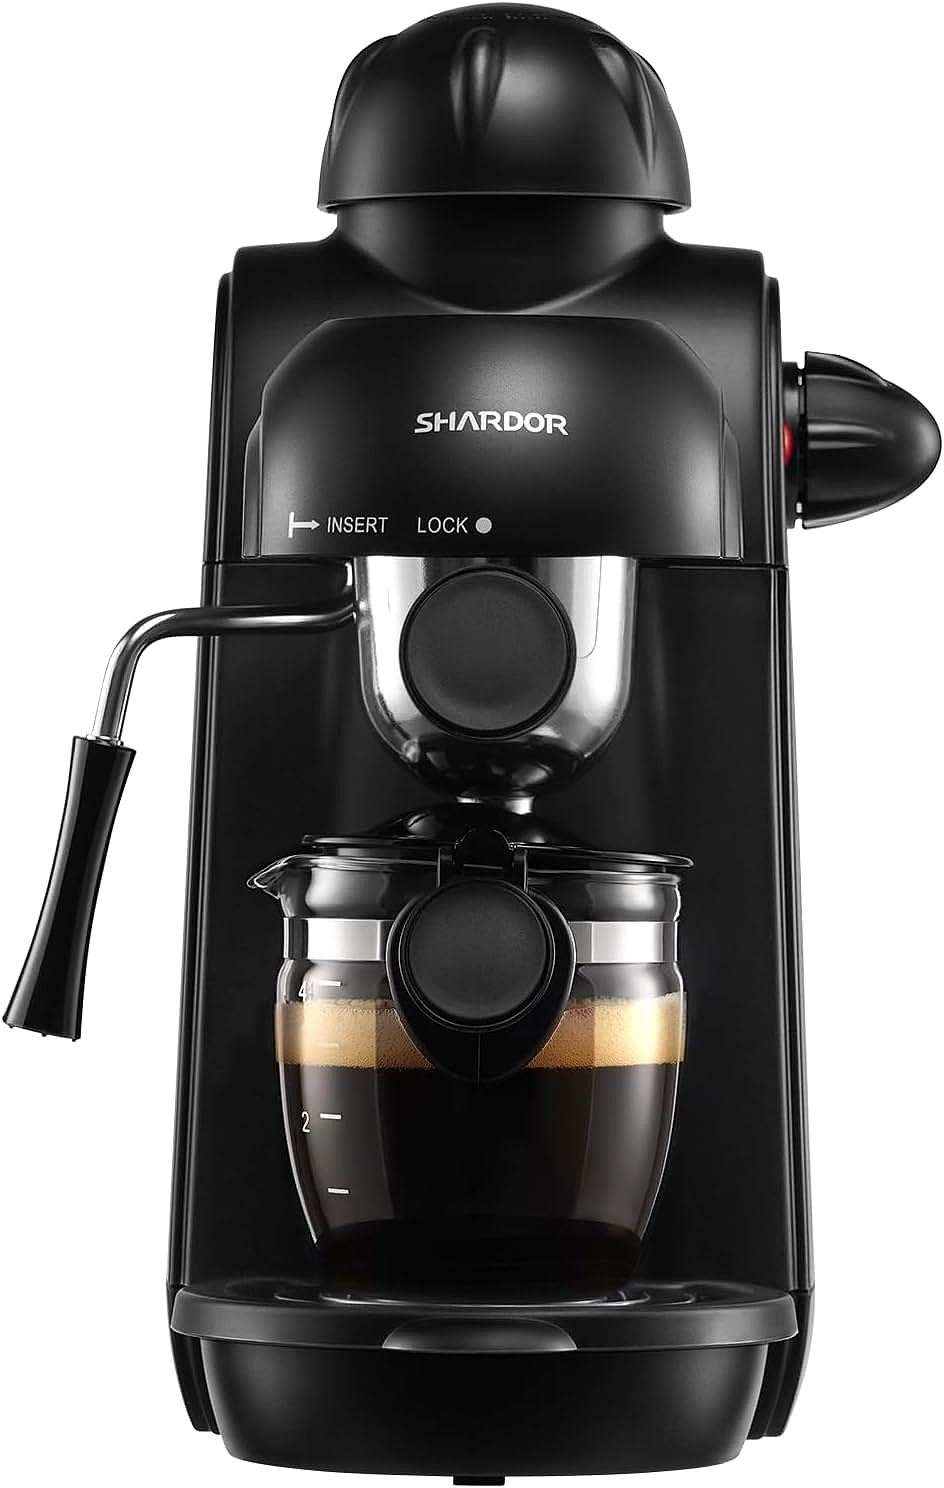 SHARDOR CRM2008 Espresso Machine: A Compact and Easy-to-Use Espresso Maker for Home Use